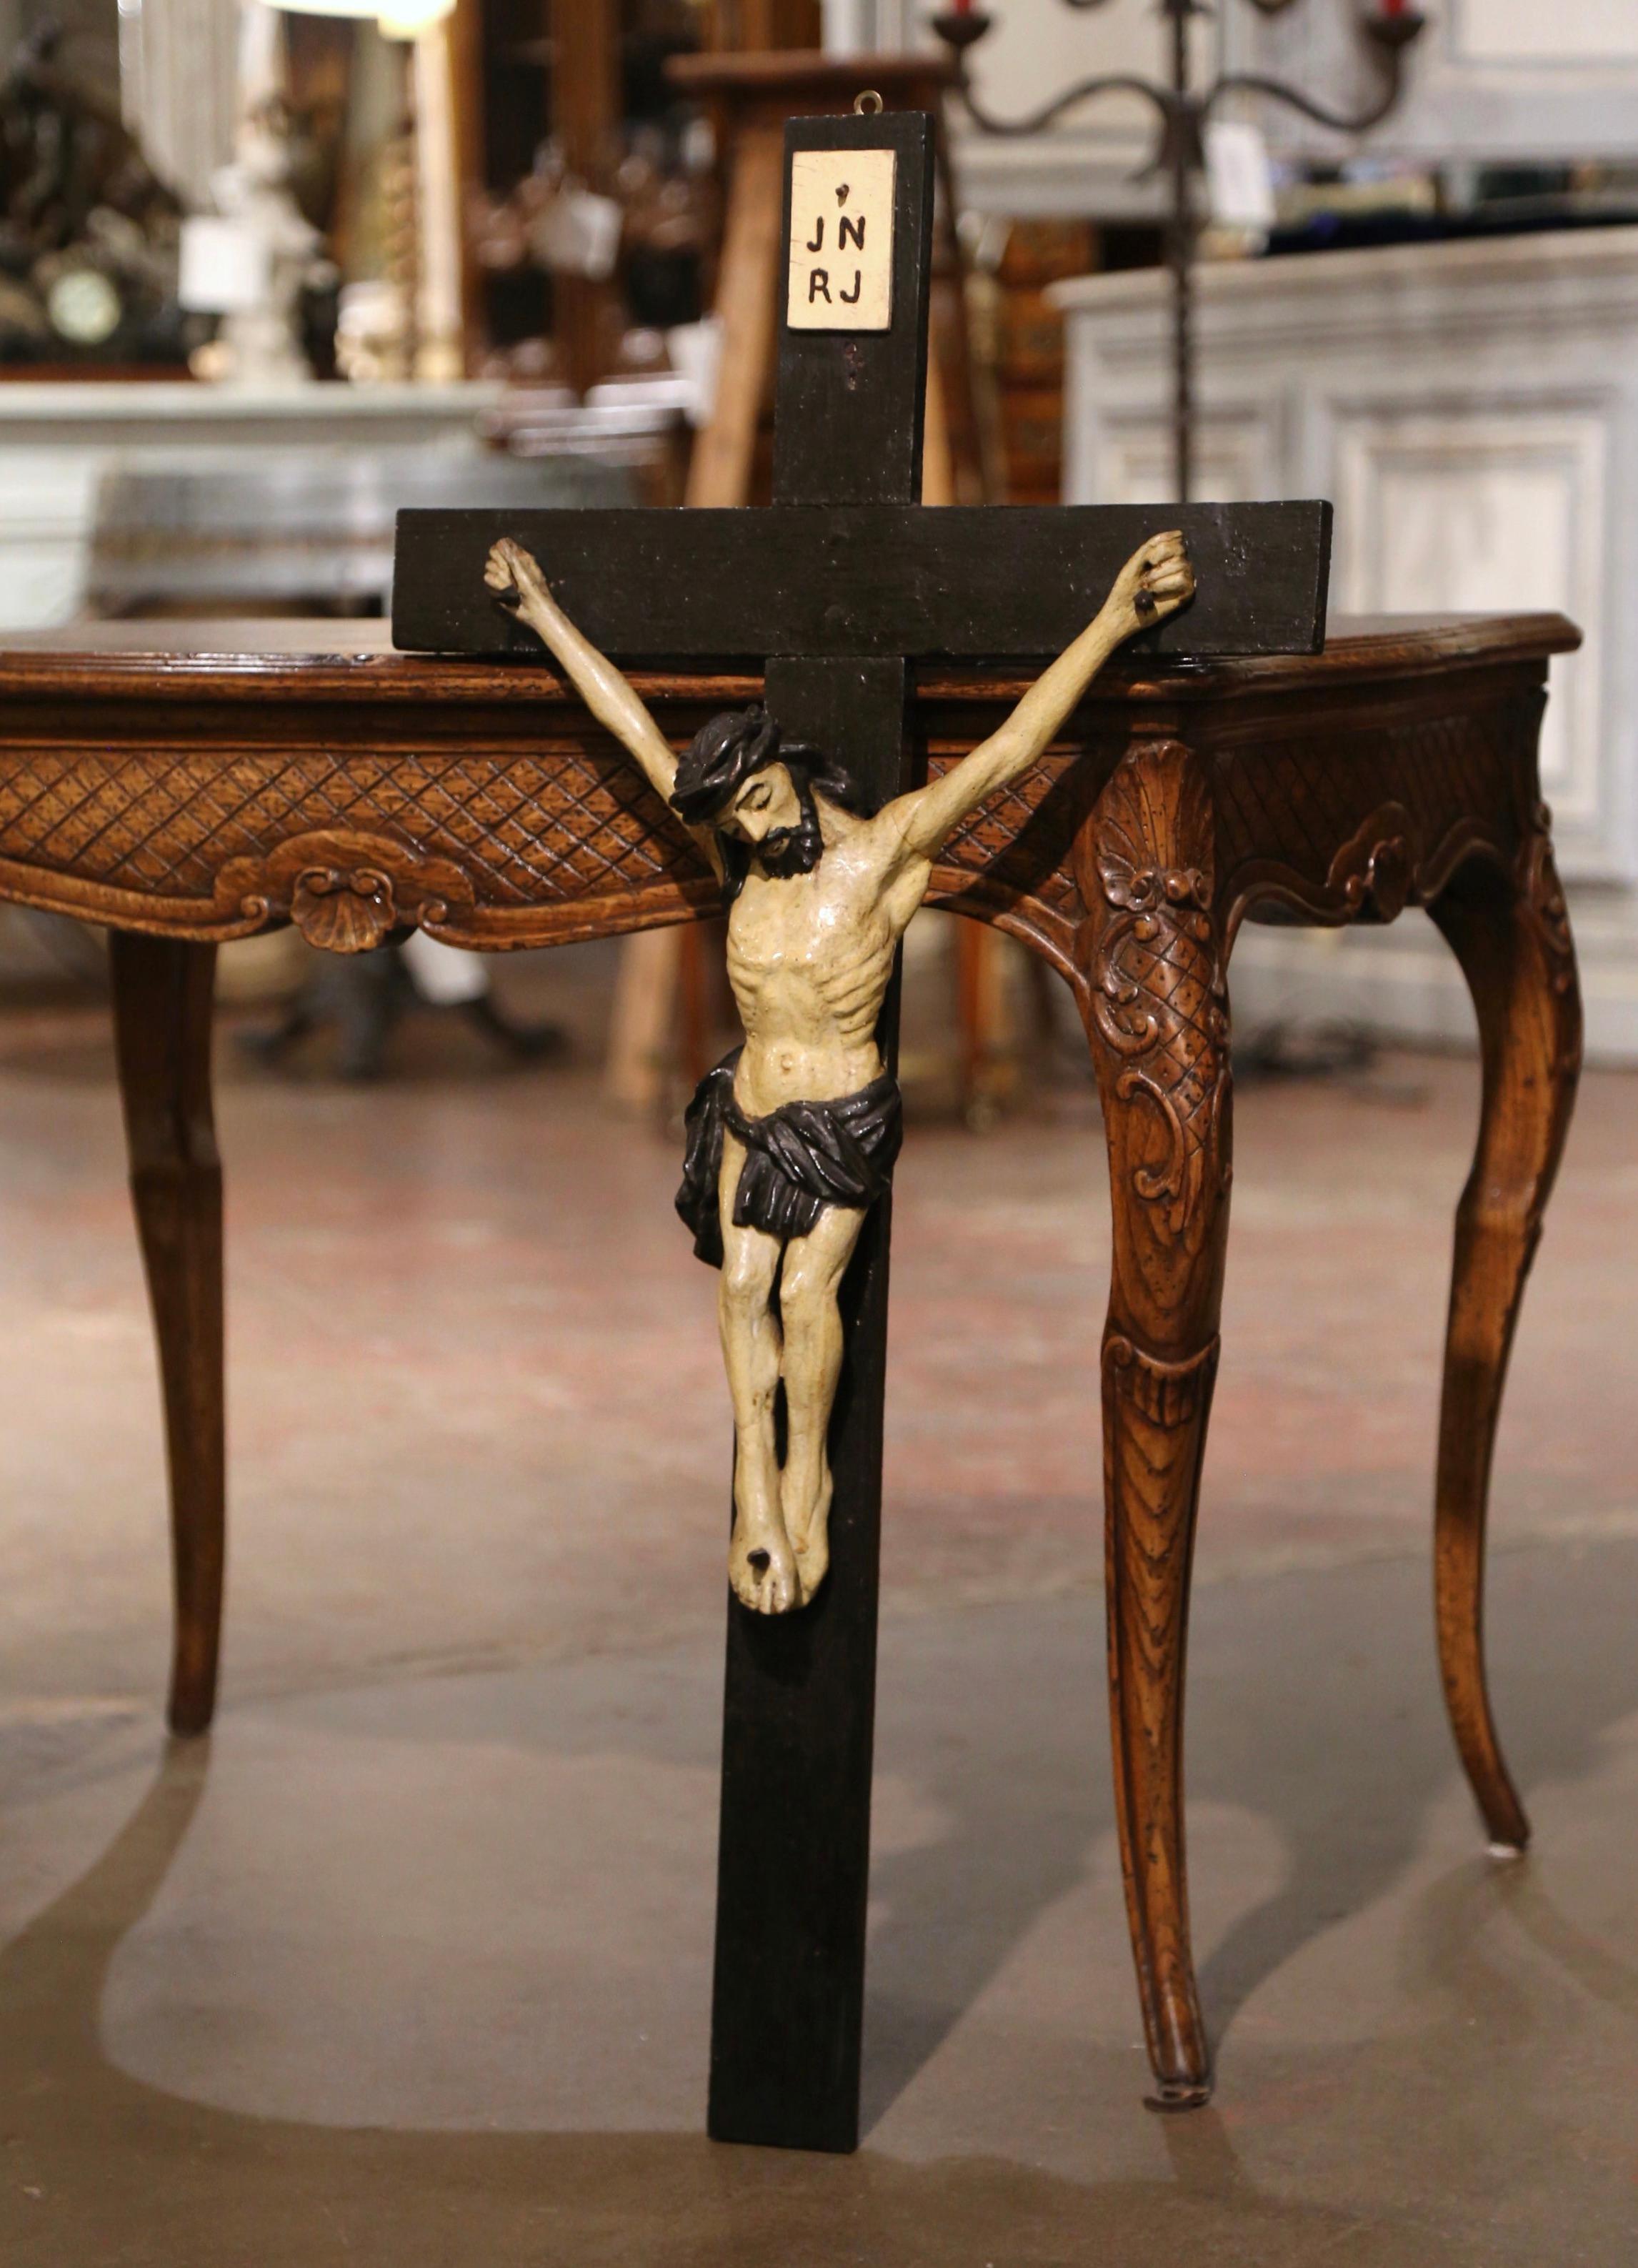 Diese antike geschnitzte Statue des an das Kreuz genagelten Christus wurde um 1850 in Frankreich hergestellt. Das große Kreuz, das in einer Privatkapelle im Rhonetal gefunden wurde, zeigt eine detaillierte, handgeschnitzte Skulptur von Jesus, der